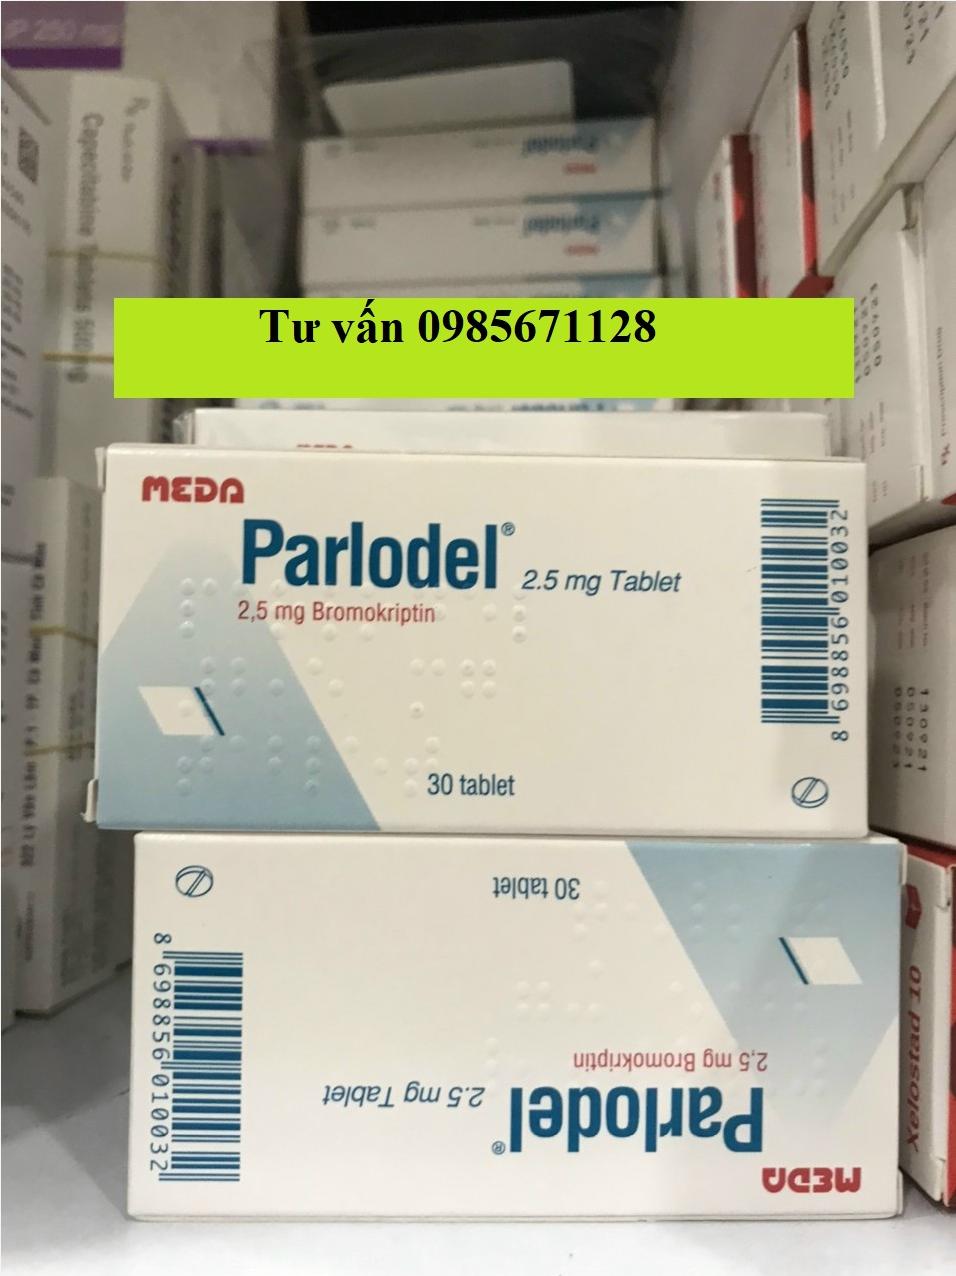 Thuốc Parlodel 2.5mg mua ở đâu, giá bao nhiêu, Thuốc cắt sữa Parlodel